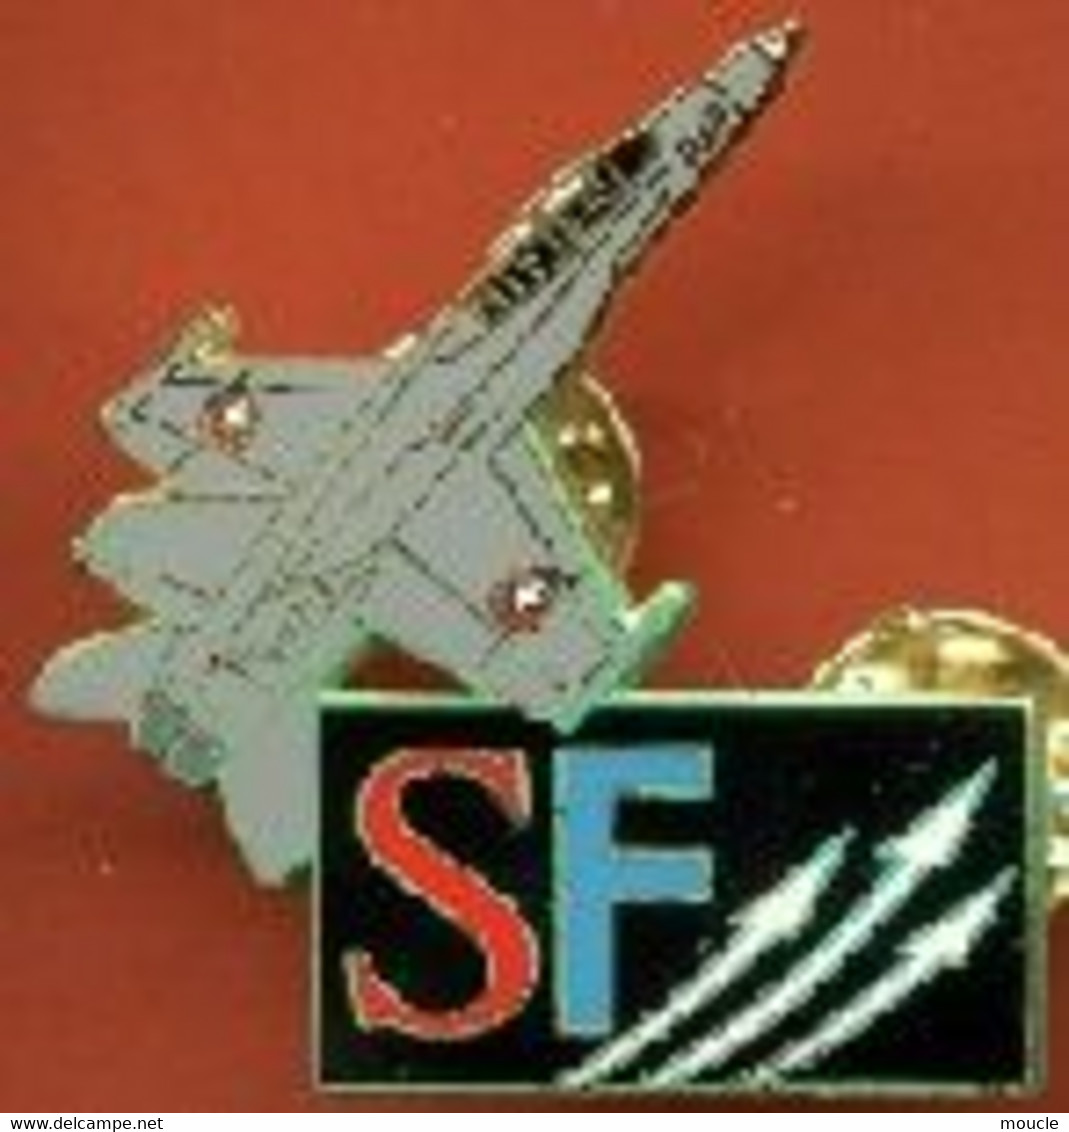 PATROUILLE SUISSE - PLANE - FLUGZEUG - AEREO - SWISS AIR FORCE TEAM - PATROL - SCHWEIZ - SVIZZERA - RADIO SF -     (31) - Aerei